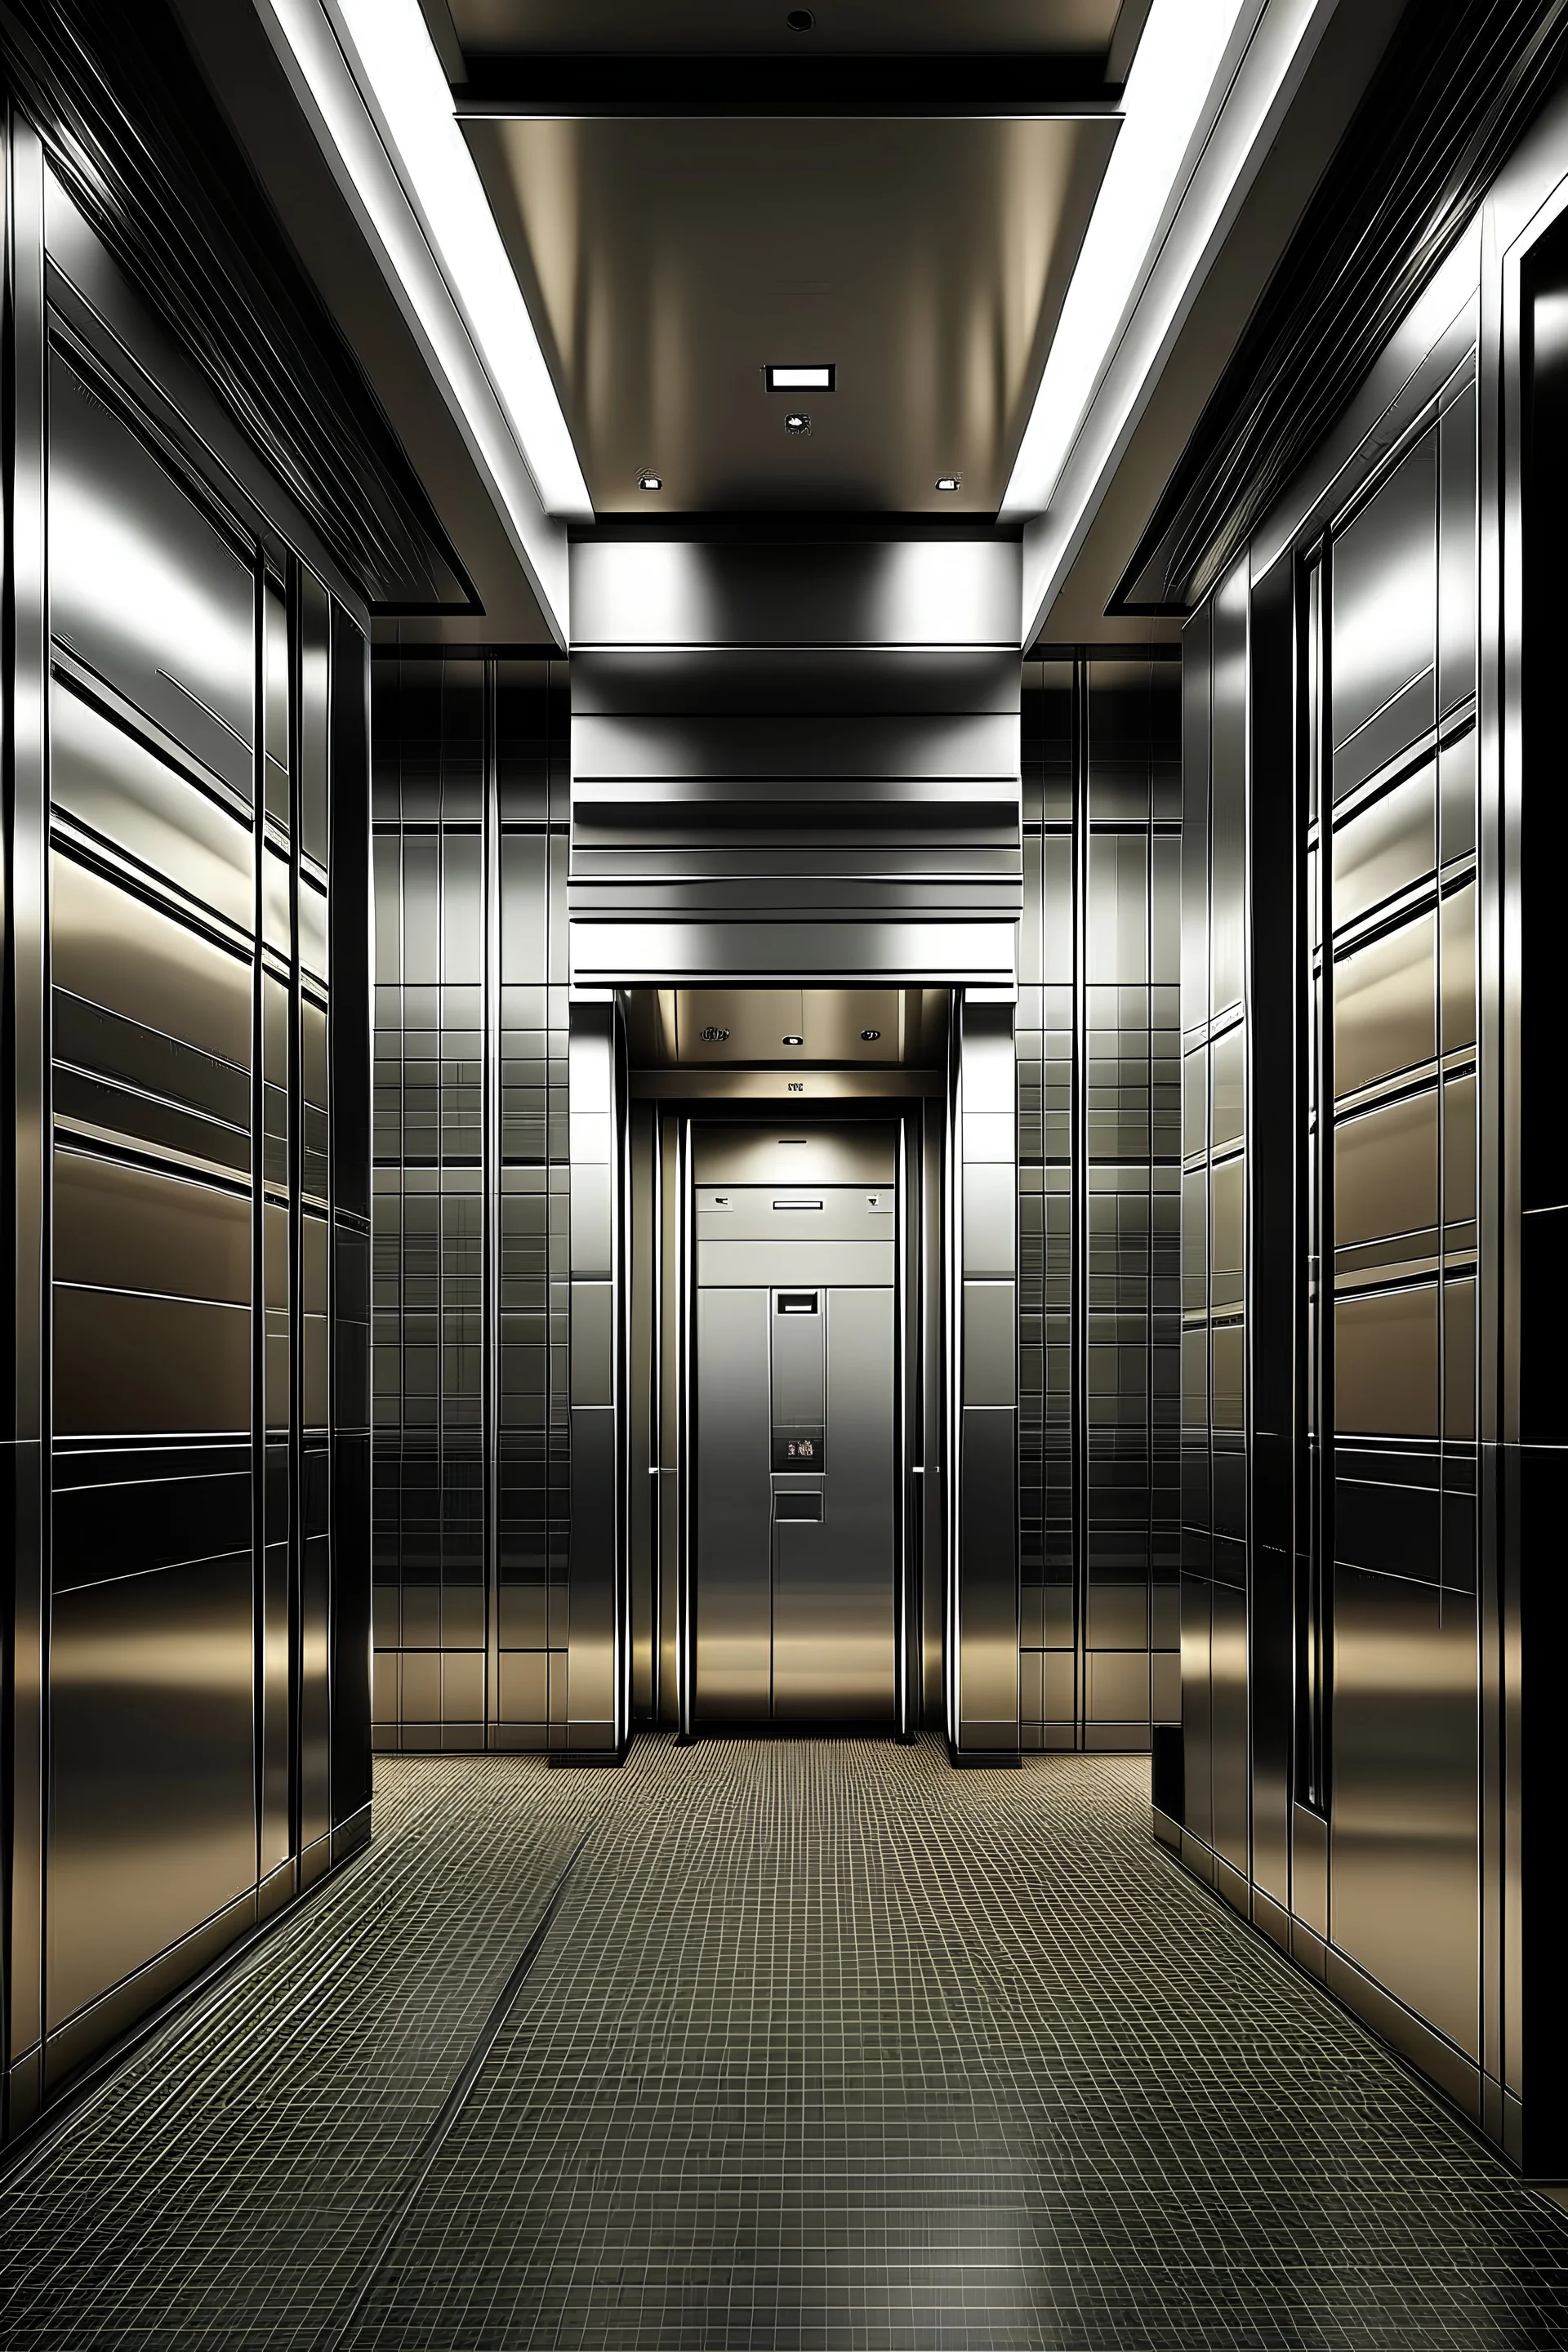 underground elevators with iconic design